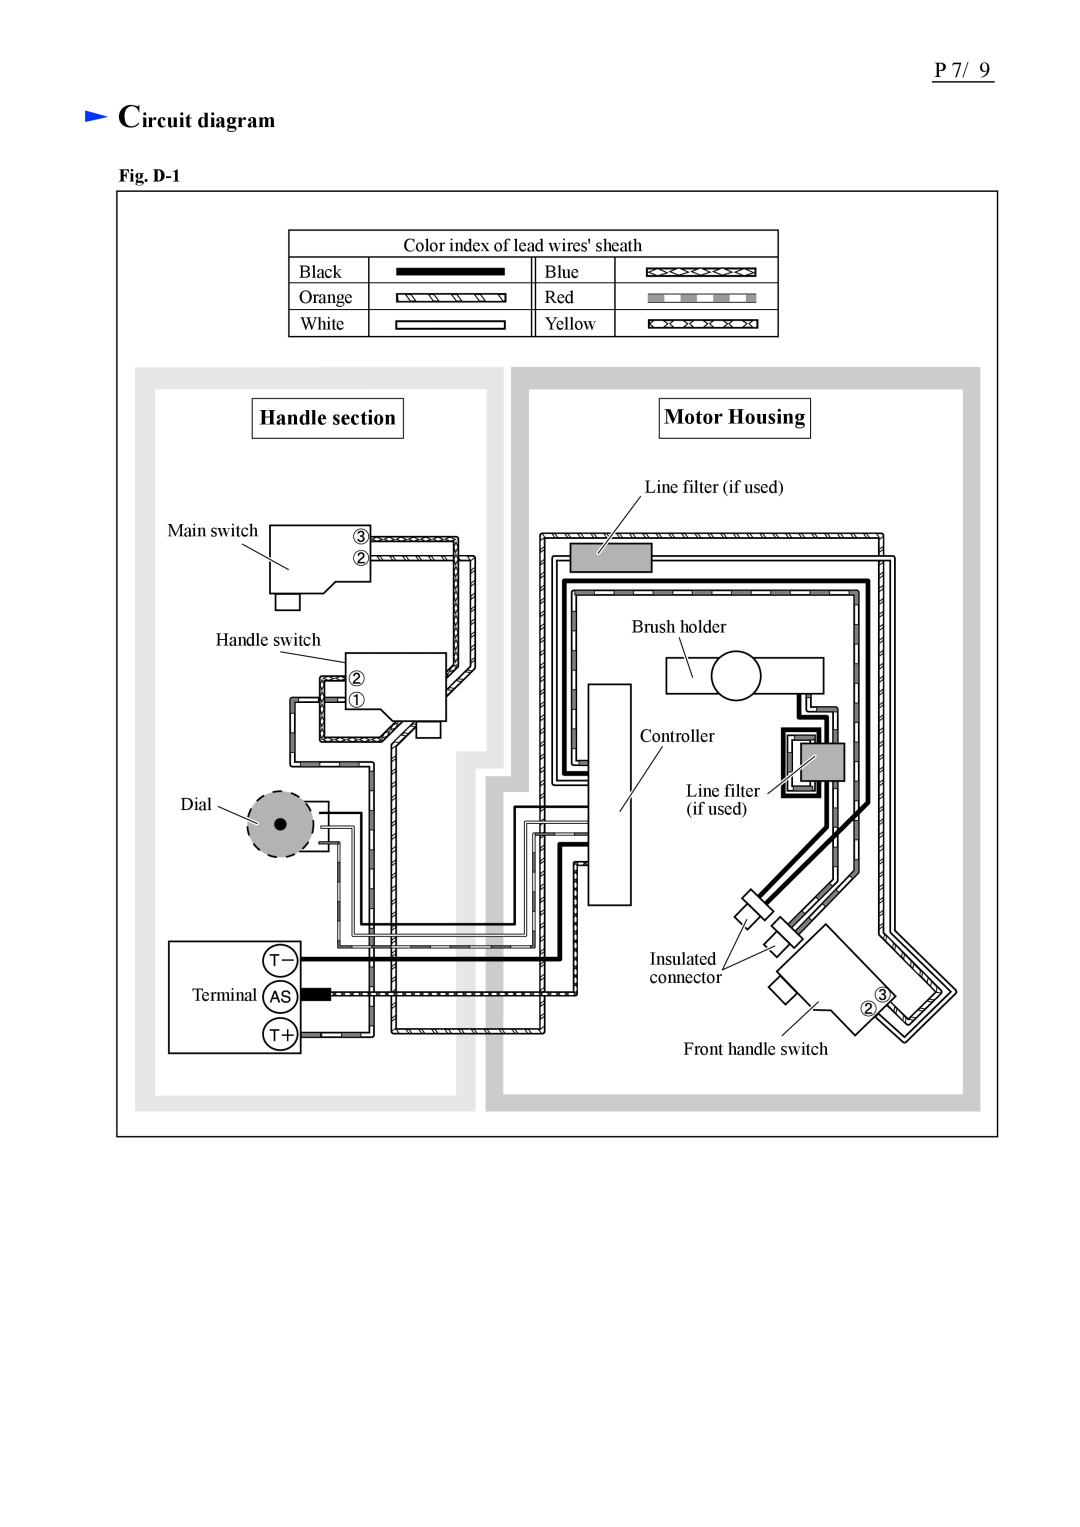 Makita BUH550/ BUH650 manual Circuit diagram, Handle section, Motor Housing, Fig. D-1 